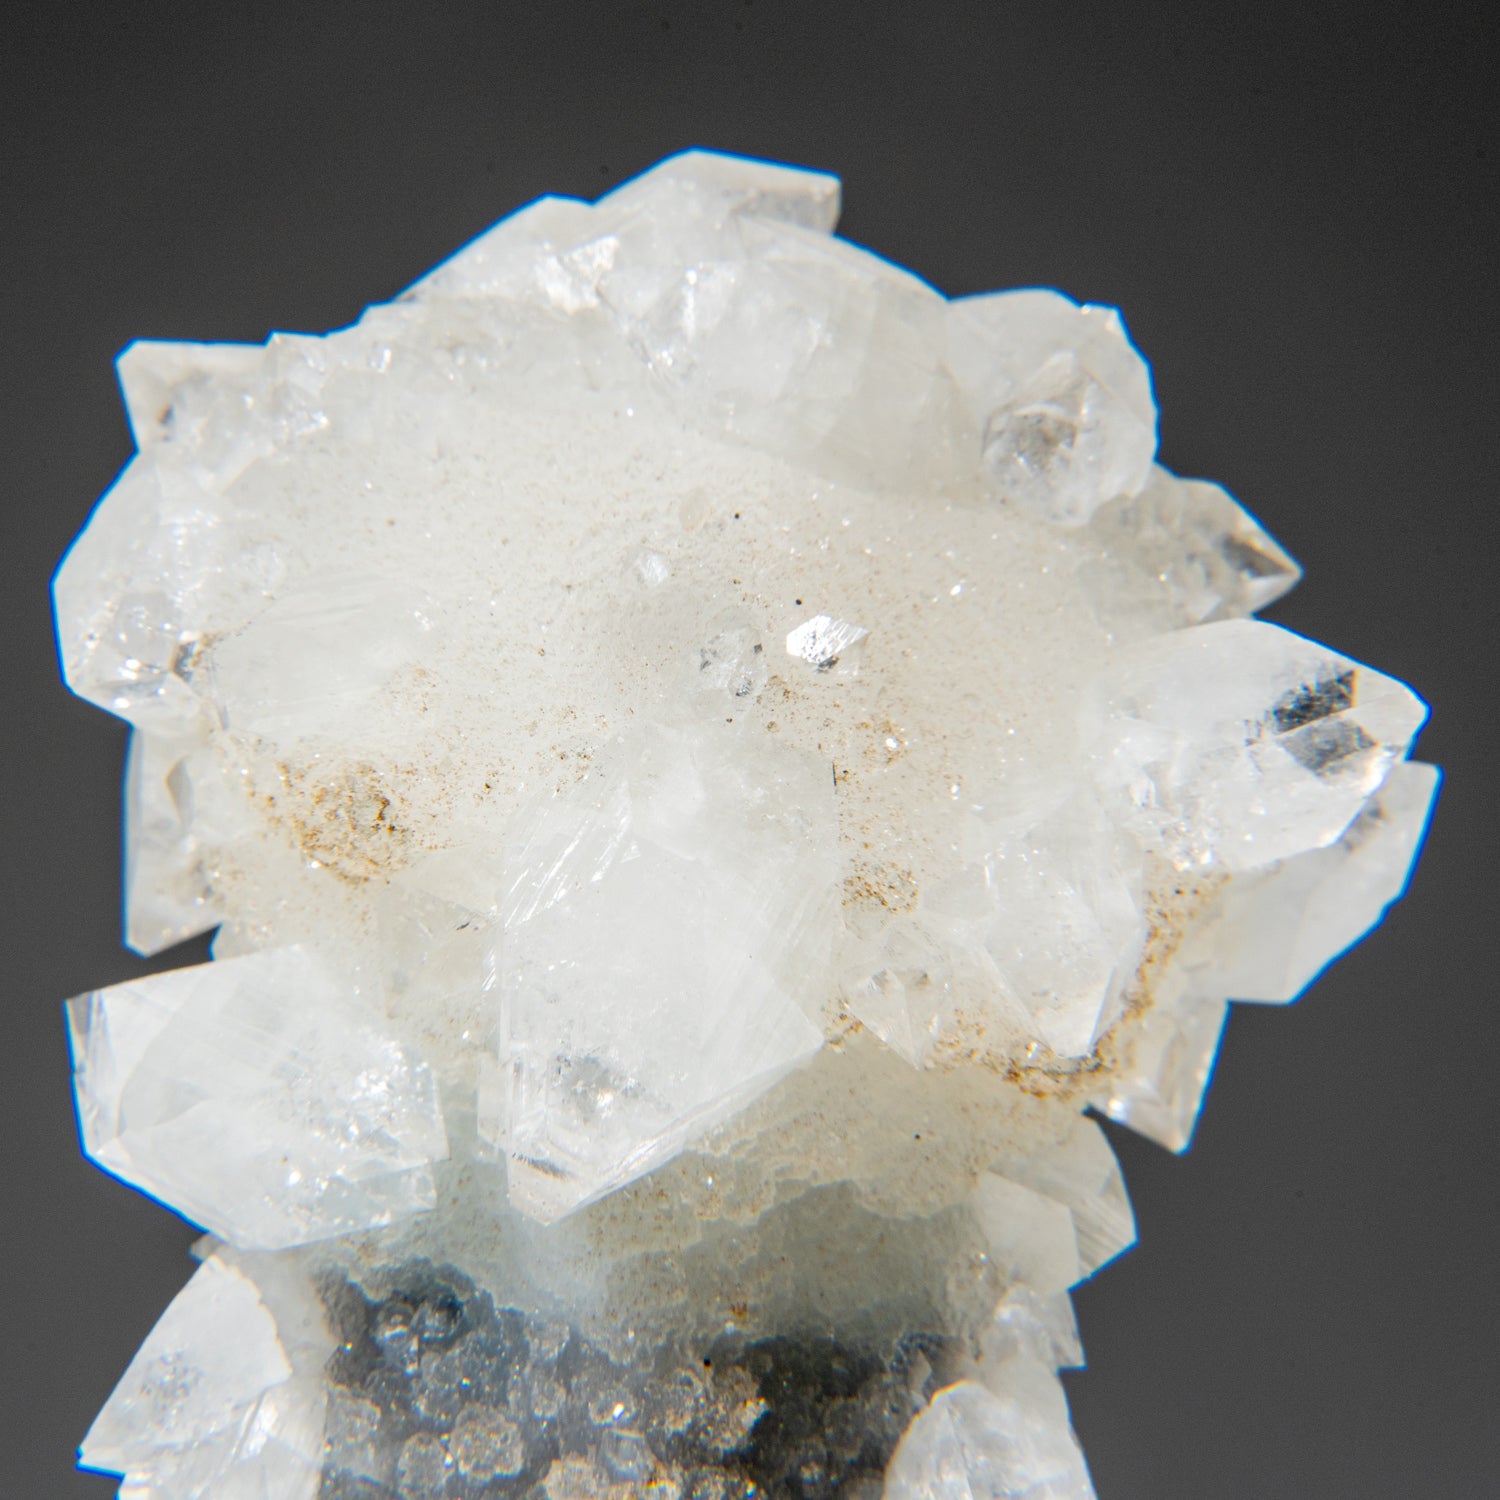 Apophyllite on Calcite Druzy Pseudomorph from Jalgaon, Maharashtra, India